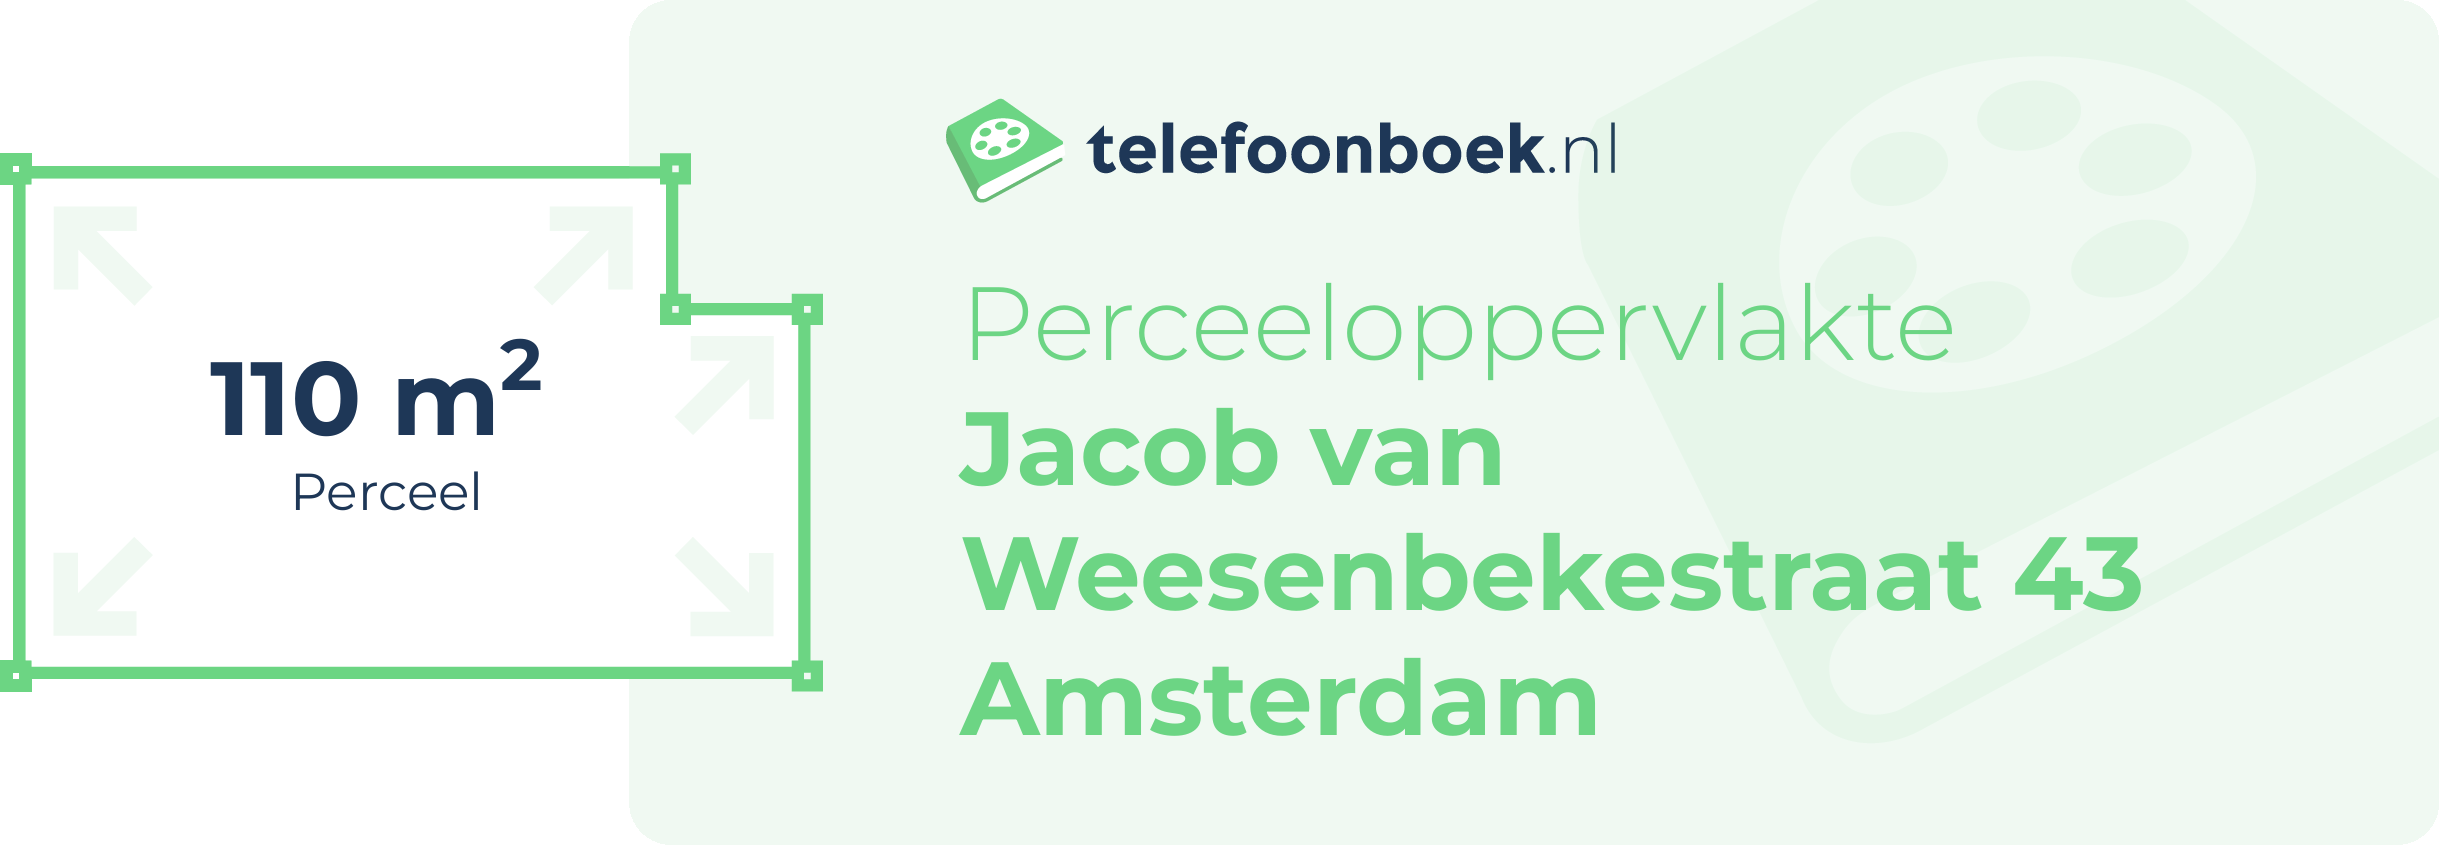 Perceeloppervlakte Jacob Van Weesenbekestraat 43 Amsterdam